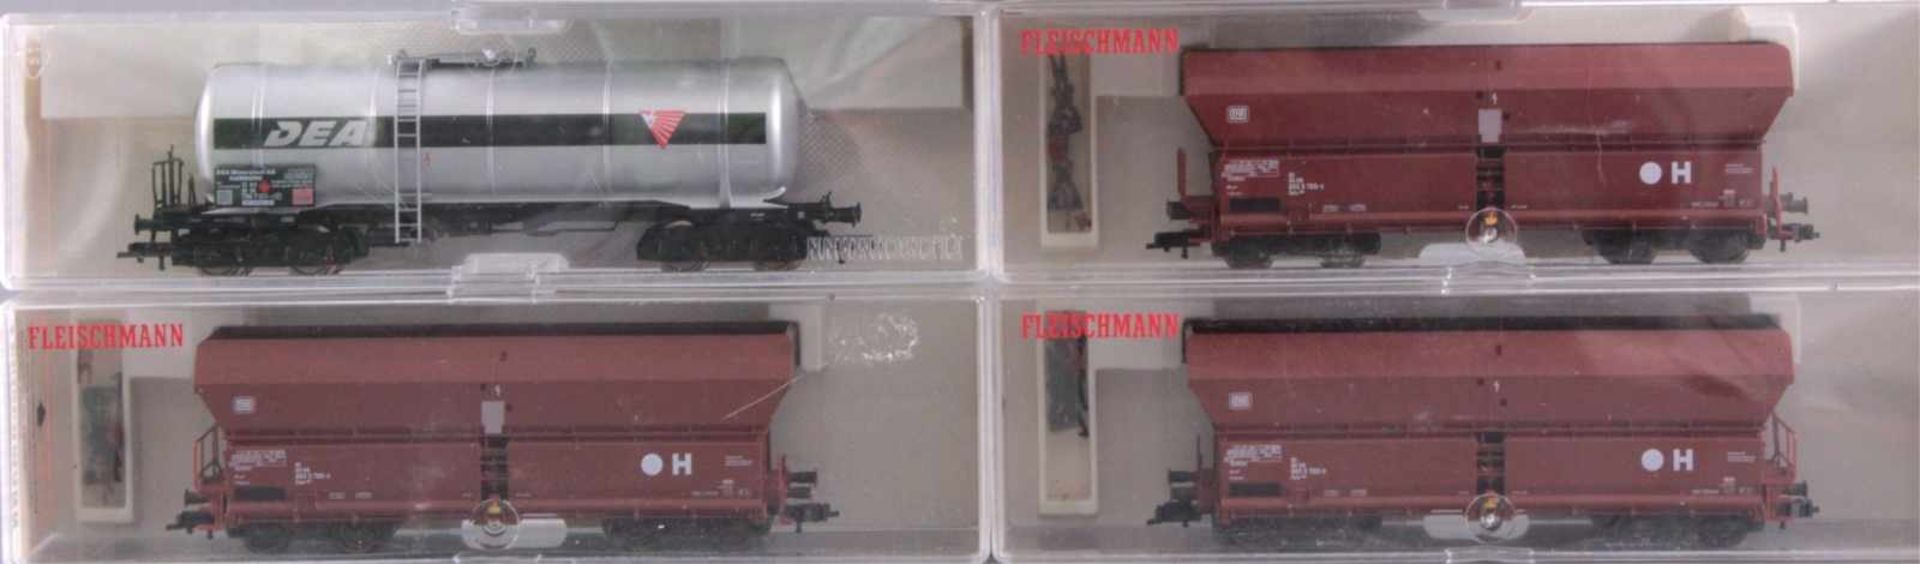 Fleischmann Dampflok 4088, 86 522 Spur H0 mit 4 WaggonsIn der Originalverpackung, Waggons 3x 5521 - Bild 4 aus 4